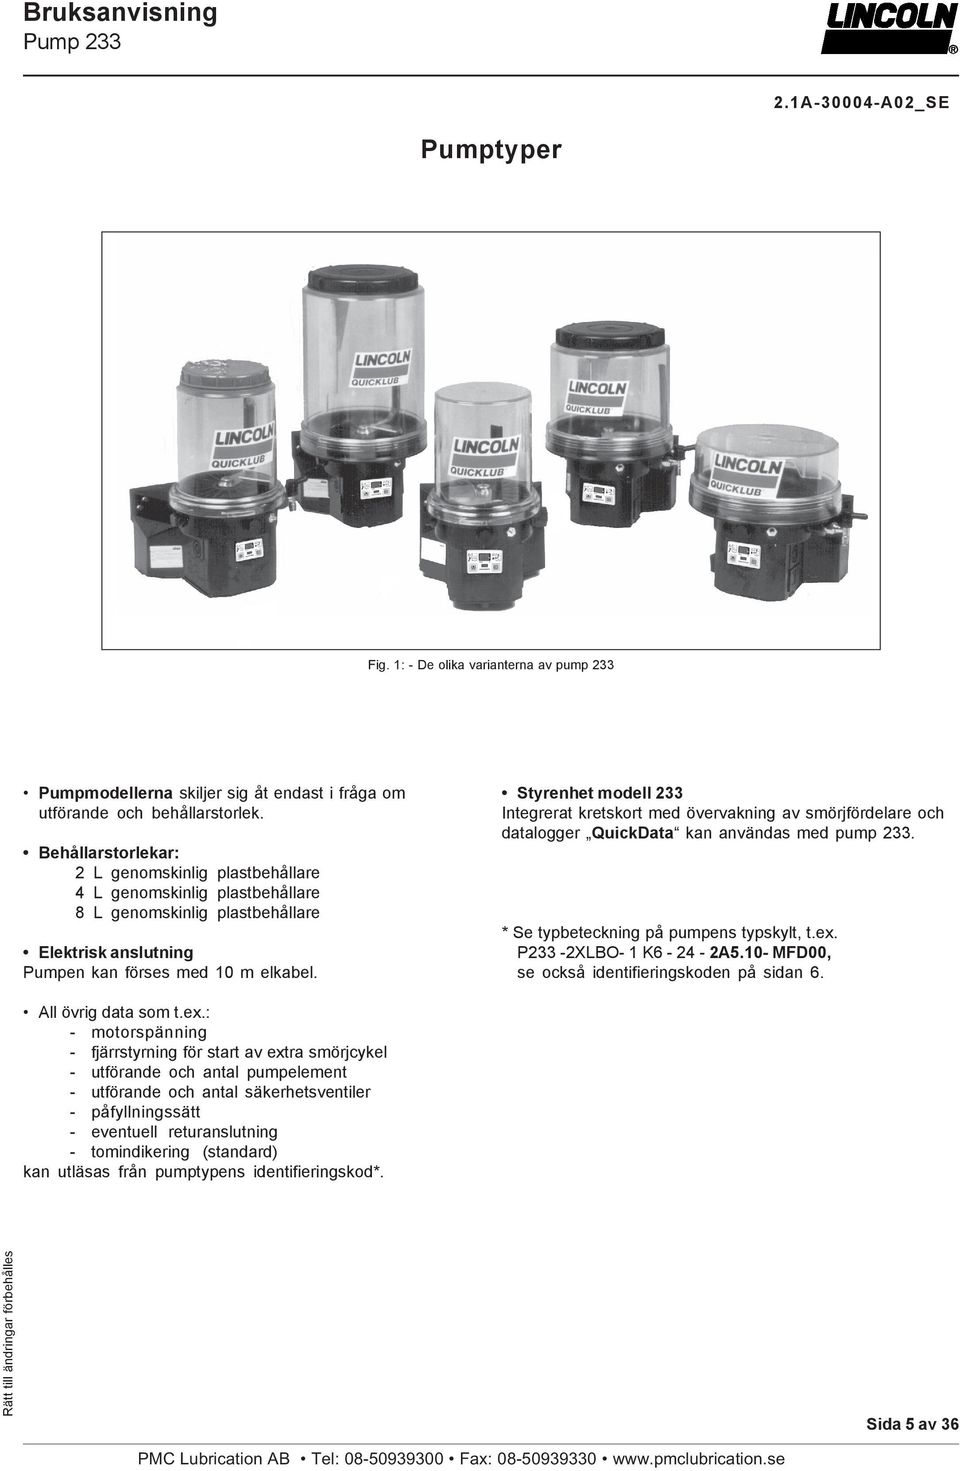 Styrenhet modell 233 Integrerat kretskort med övervakning av smörjfördelare och datalogger QuickData kan användas med pump 233. * Se typbeteckning på pumpens typskylt, t.ex. P233-2XLBO- 1 K6-24 - 2A5.